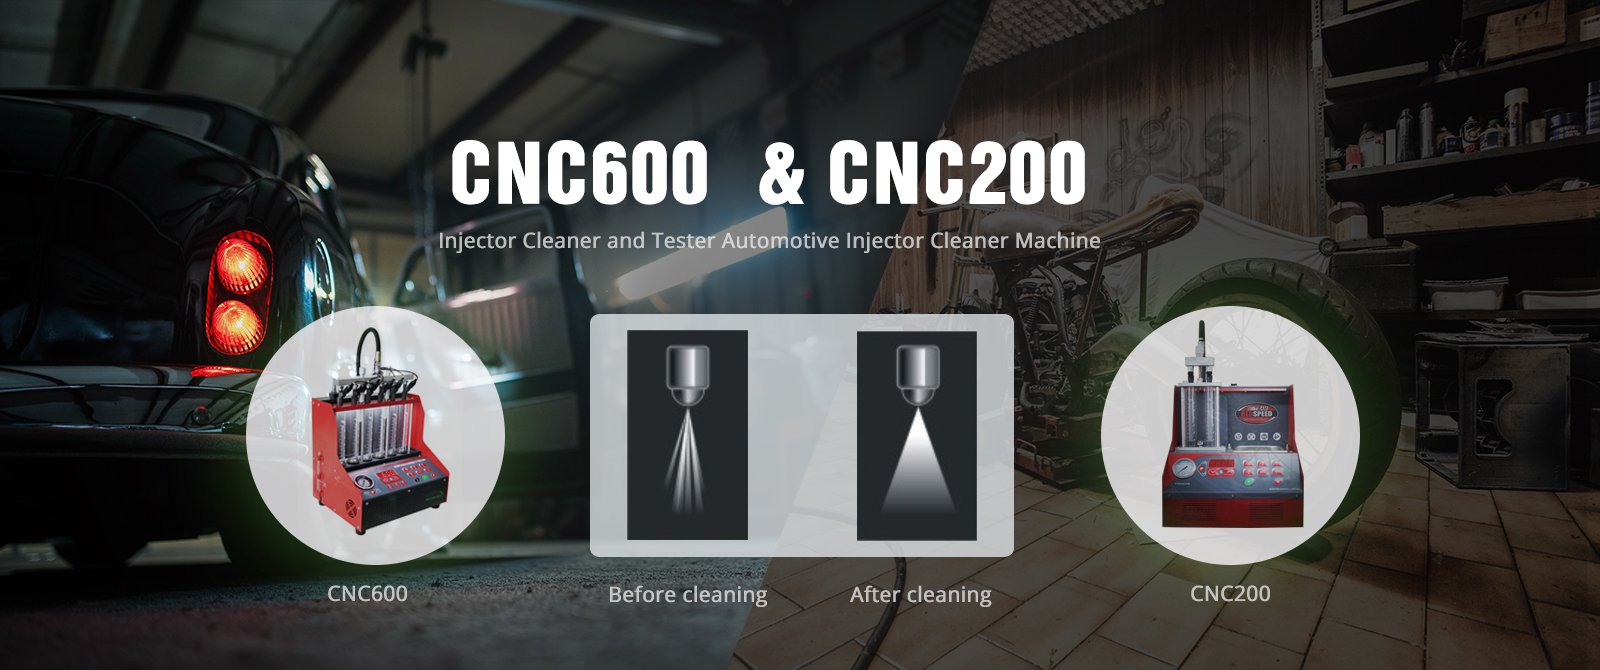 CNC600 & CNC200